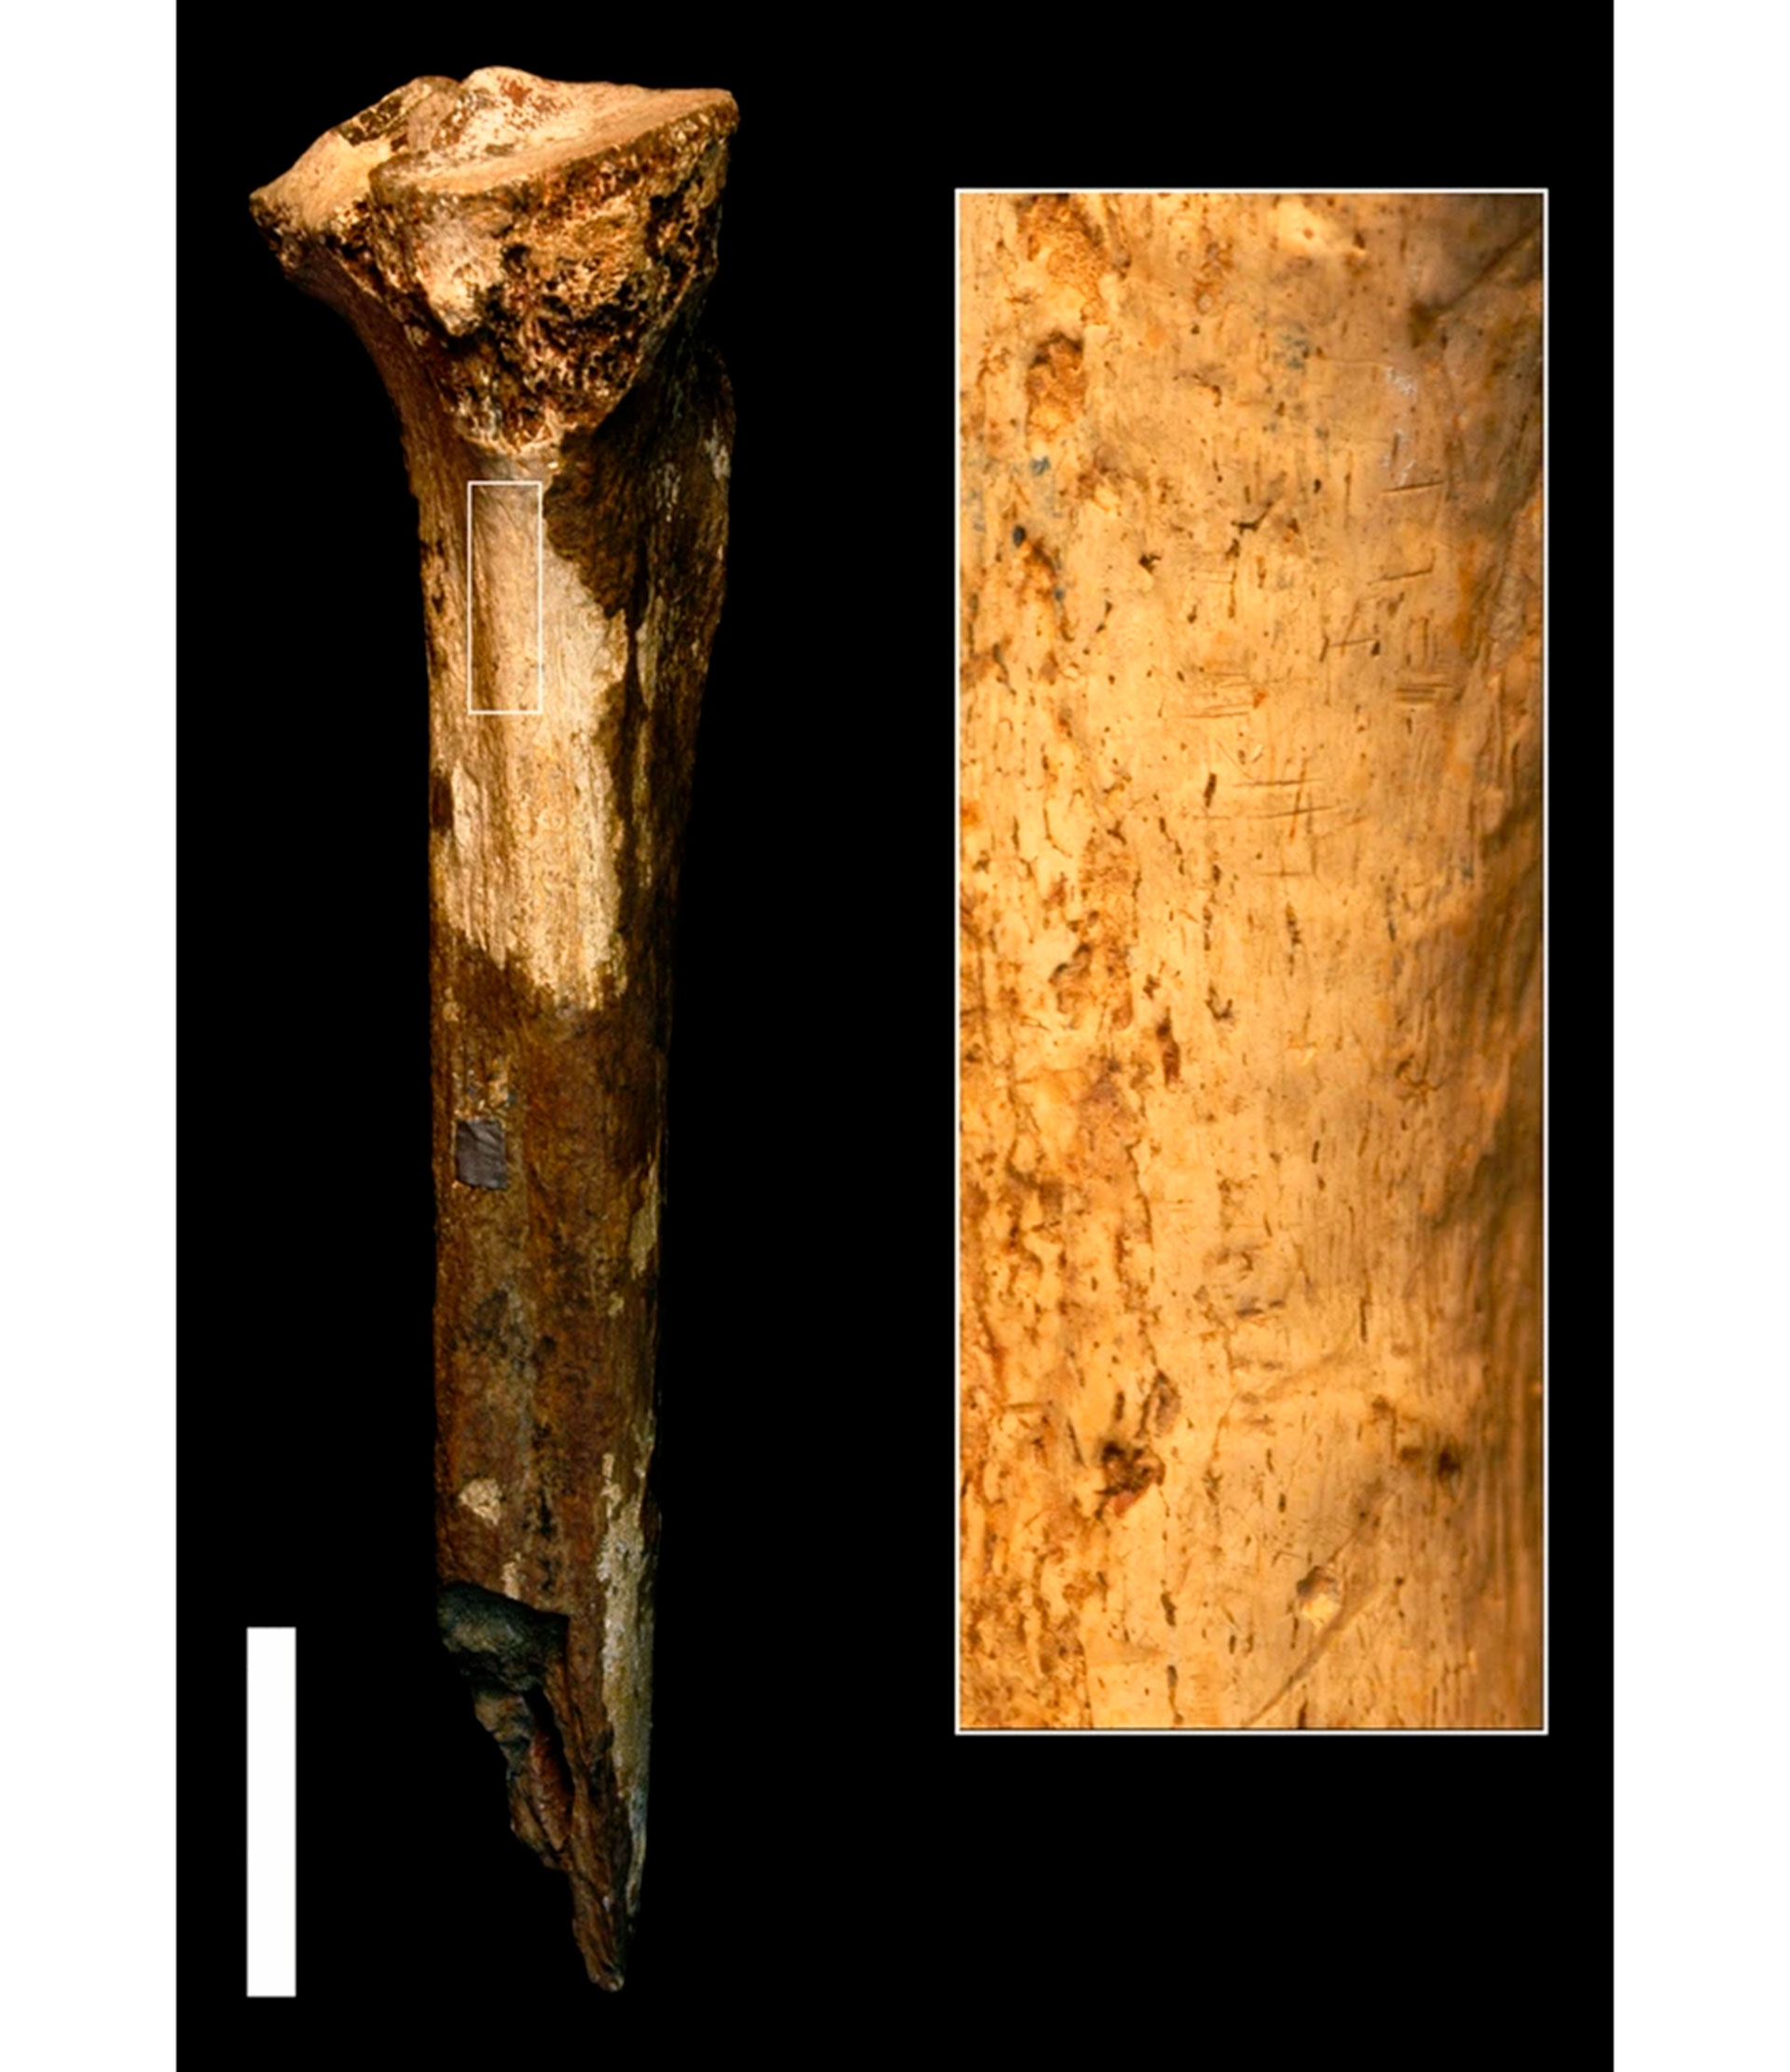 La paleoantropóloga Briana Pobiner, del Museo Nacional de Historia Natural del Smithsonian, encontró esta tibia de homínido en el Museo Nacional de Nairobi, en Kenia. El área ampliada muestra marcas de corte. (Jennifer Clark)